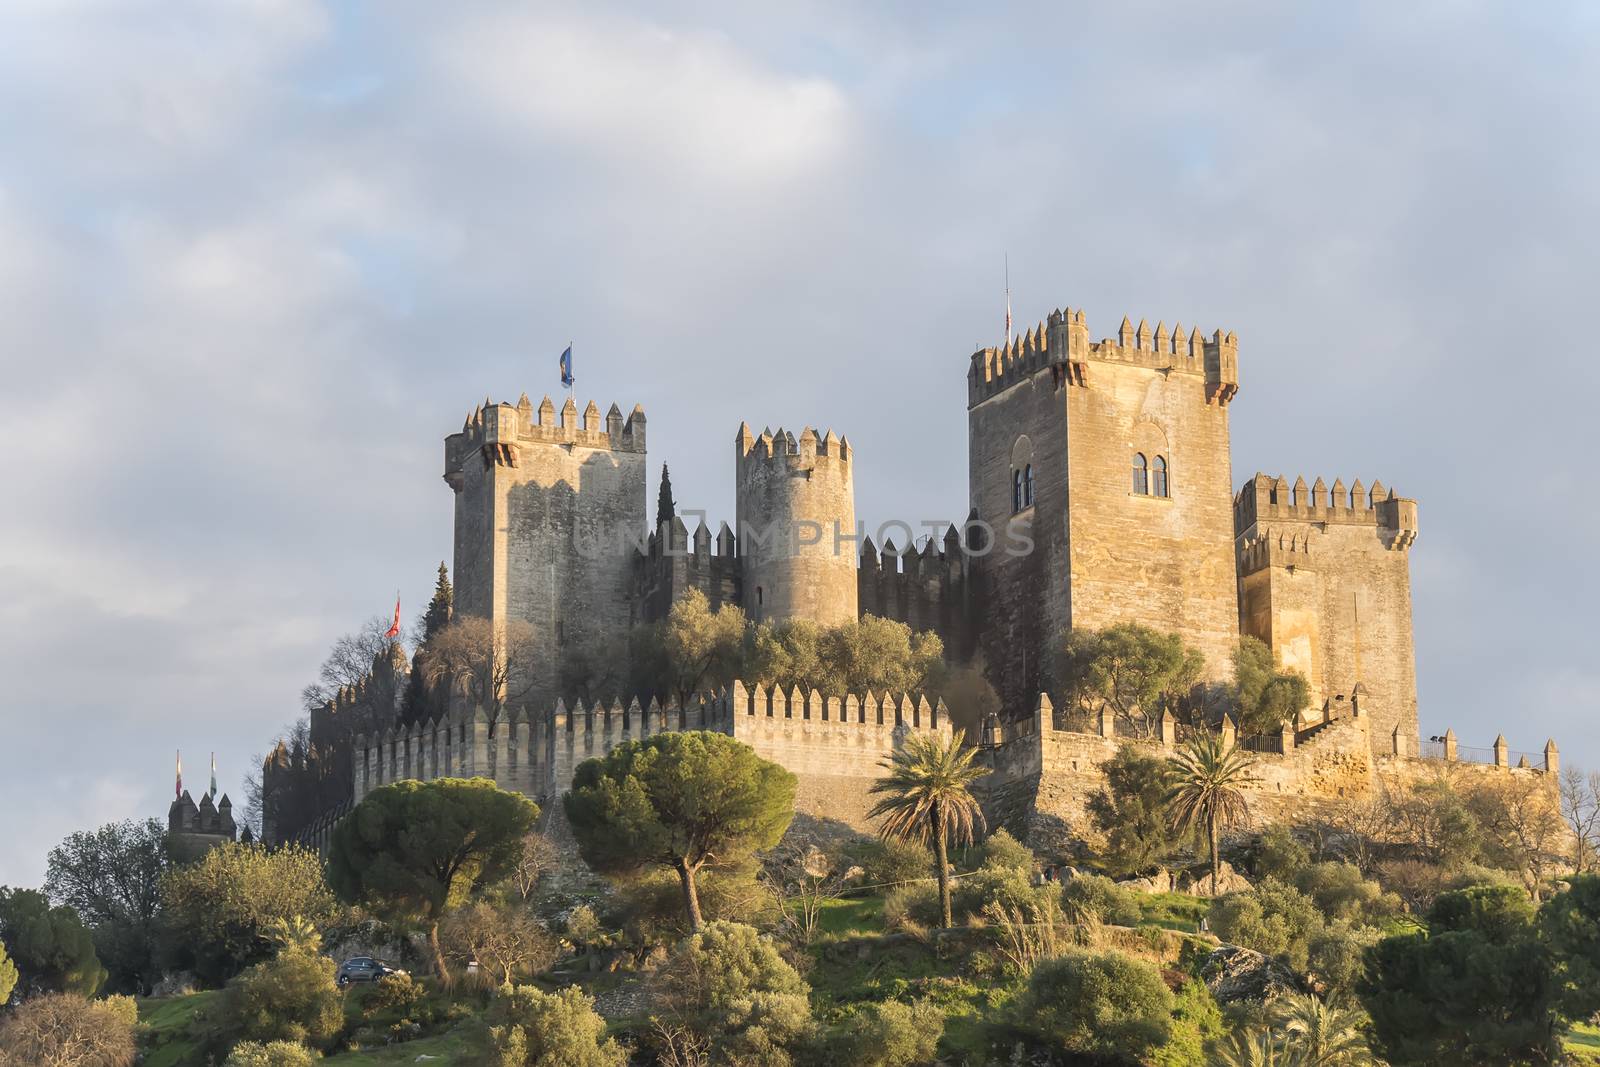 Almodovar del rio Castle, Cordoba, Spain by max8xam